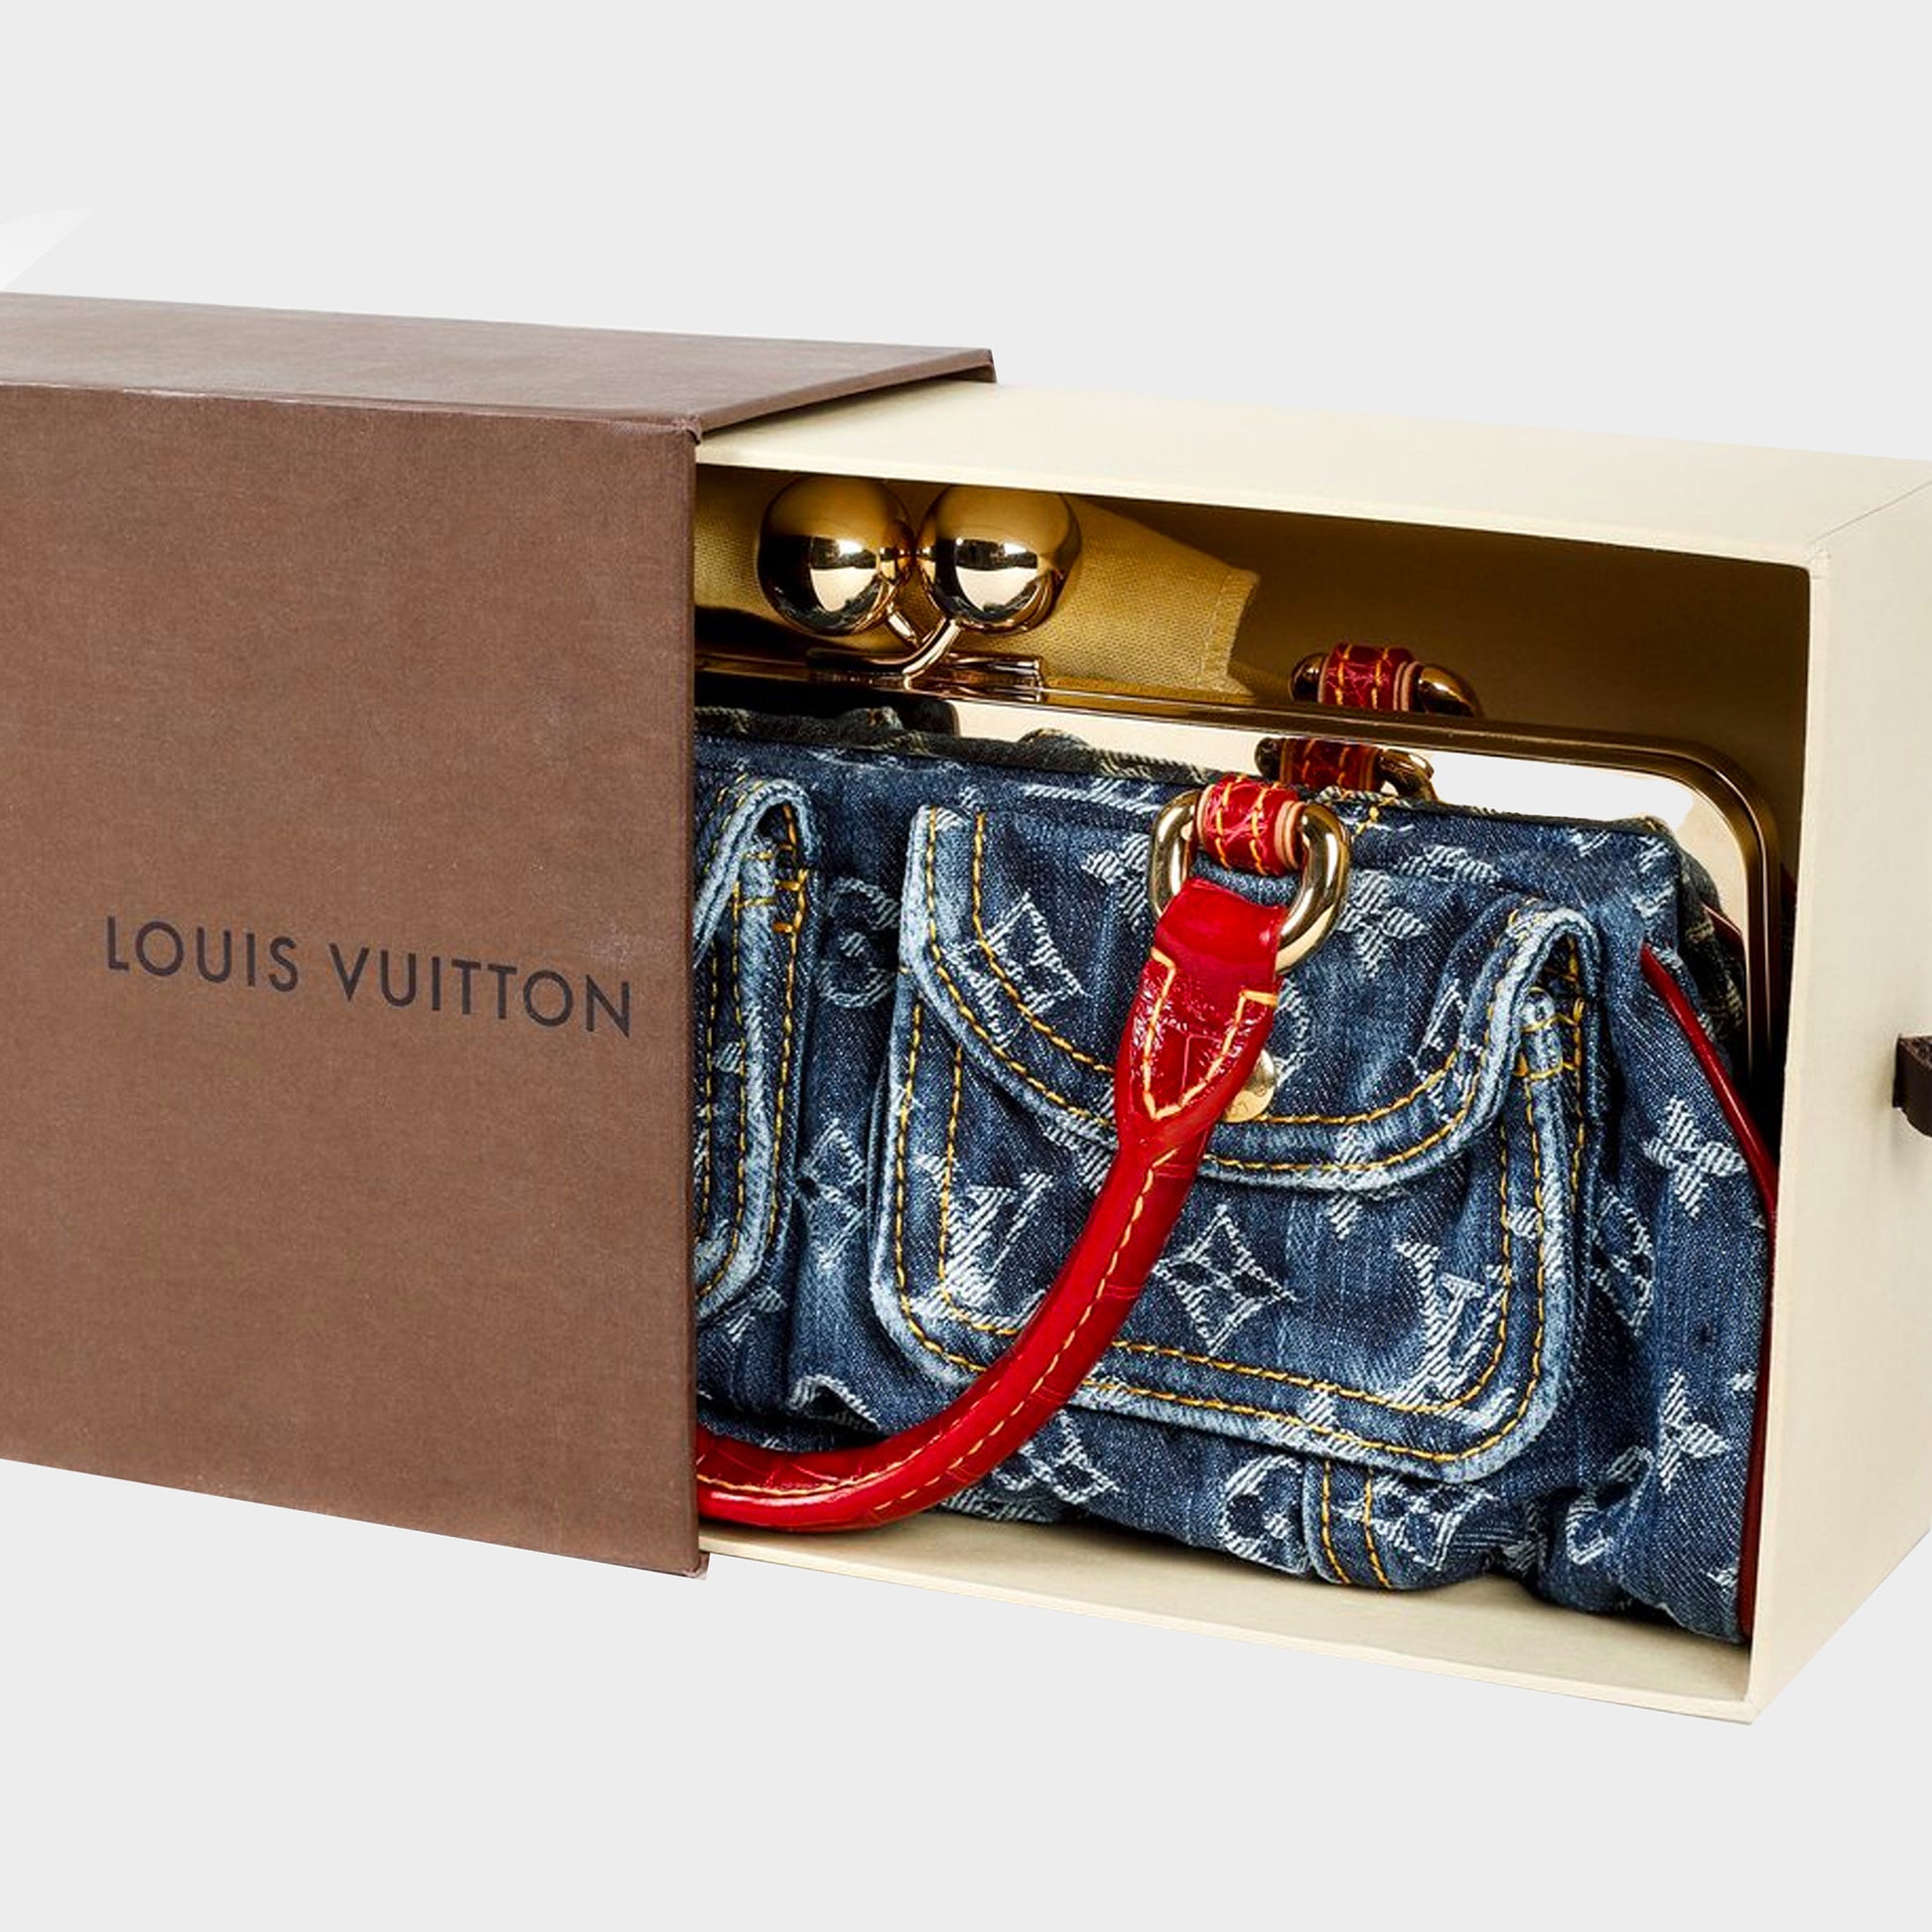 Louis Vuitton Colombia Archives